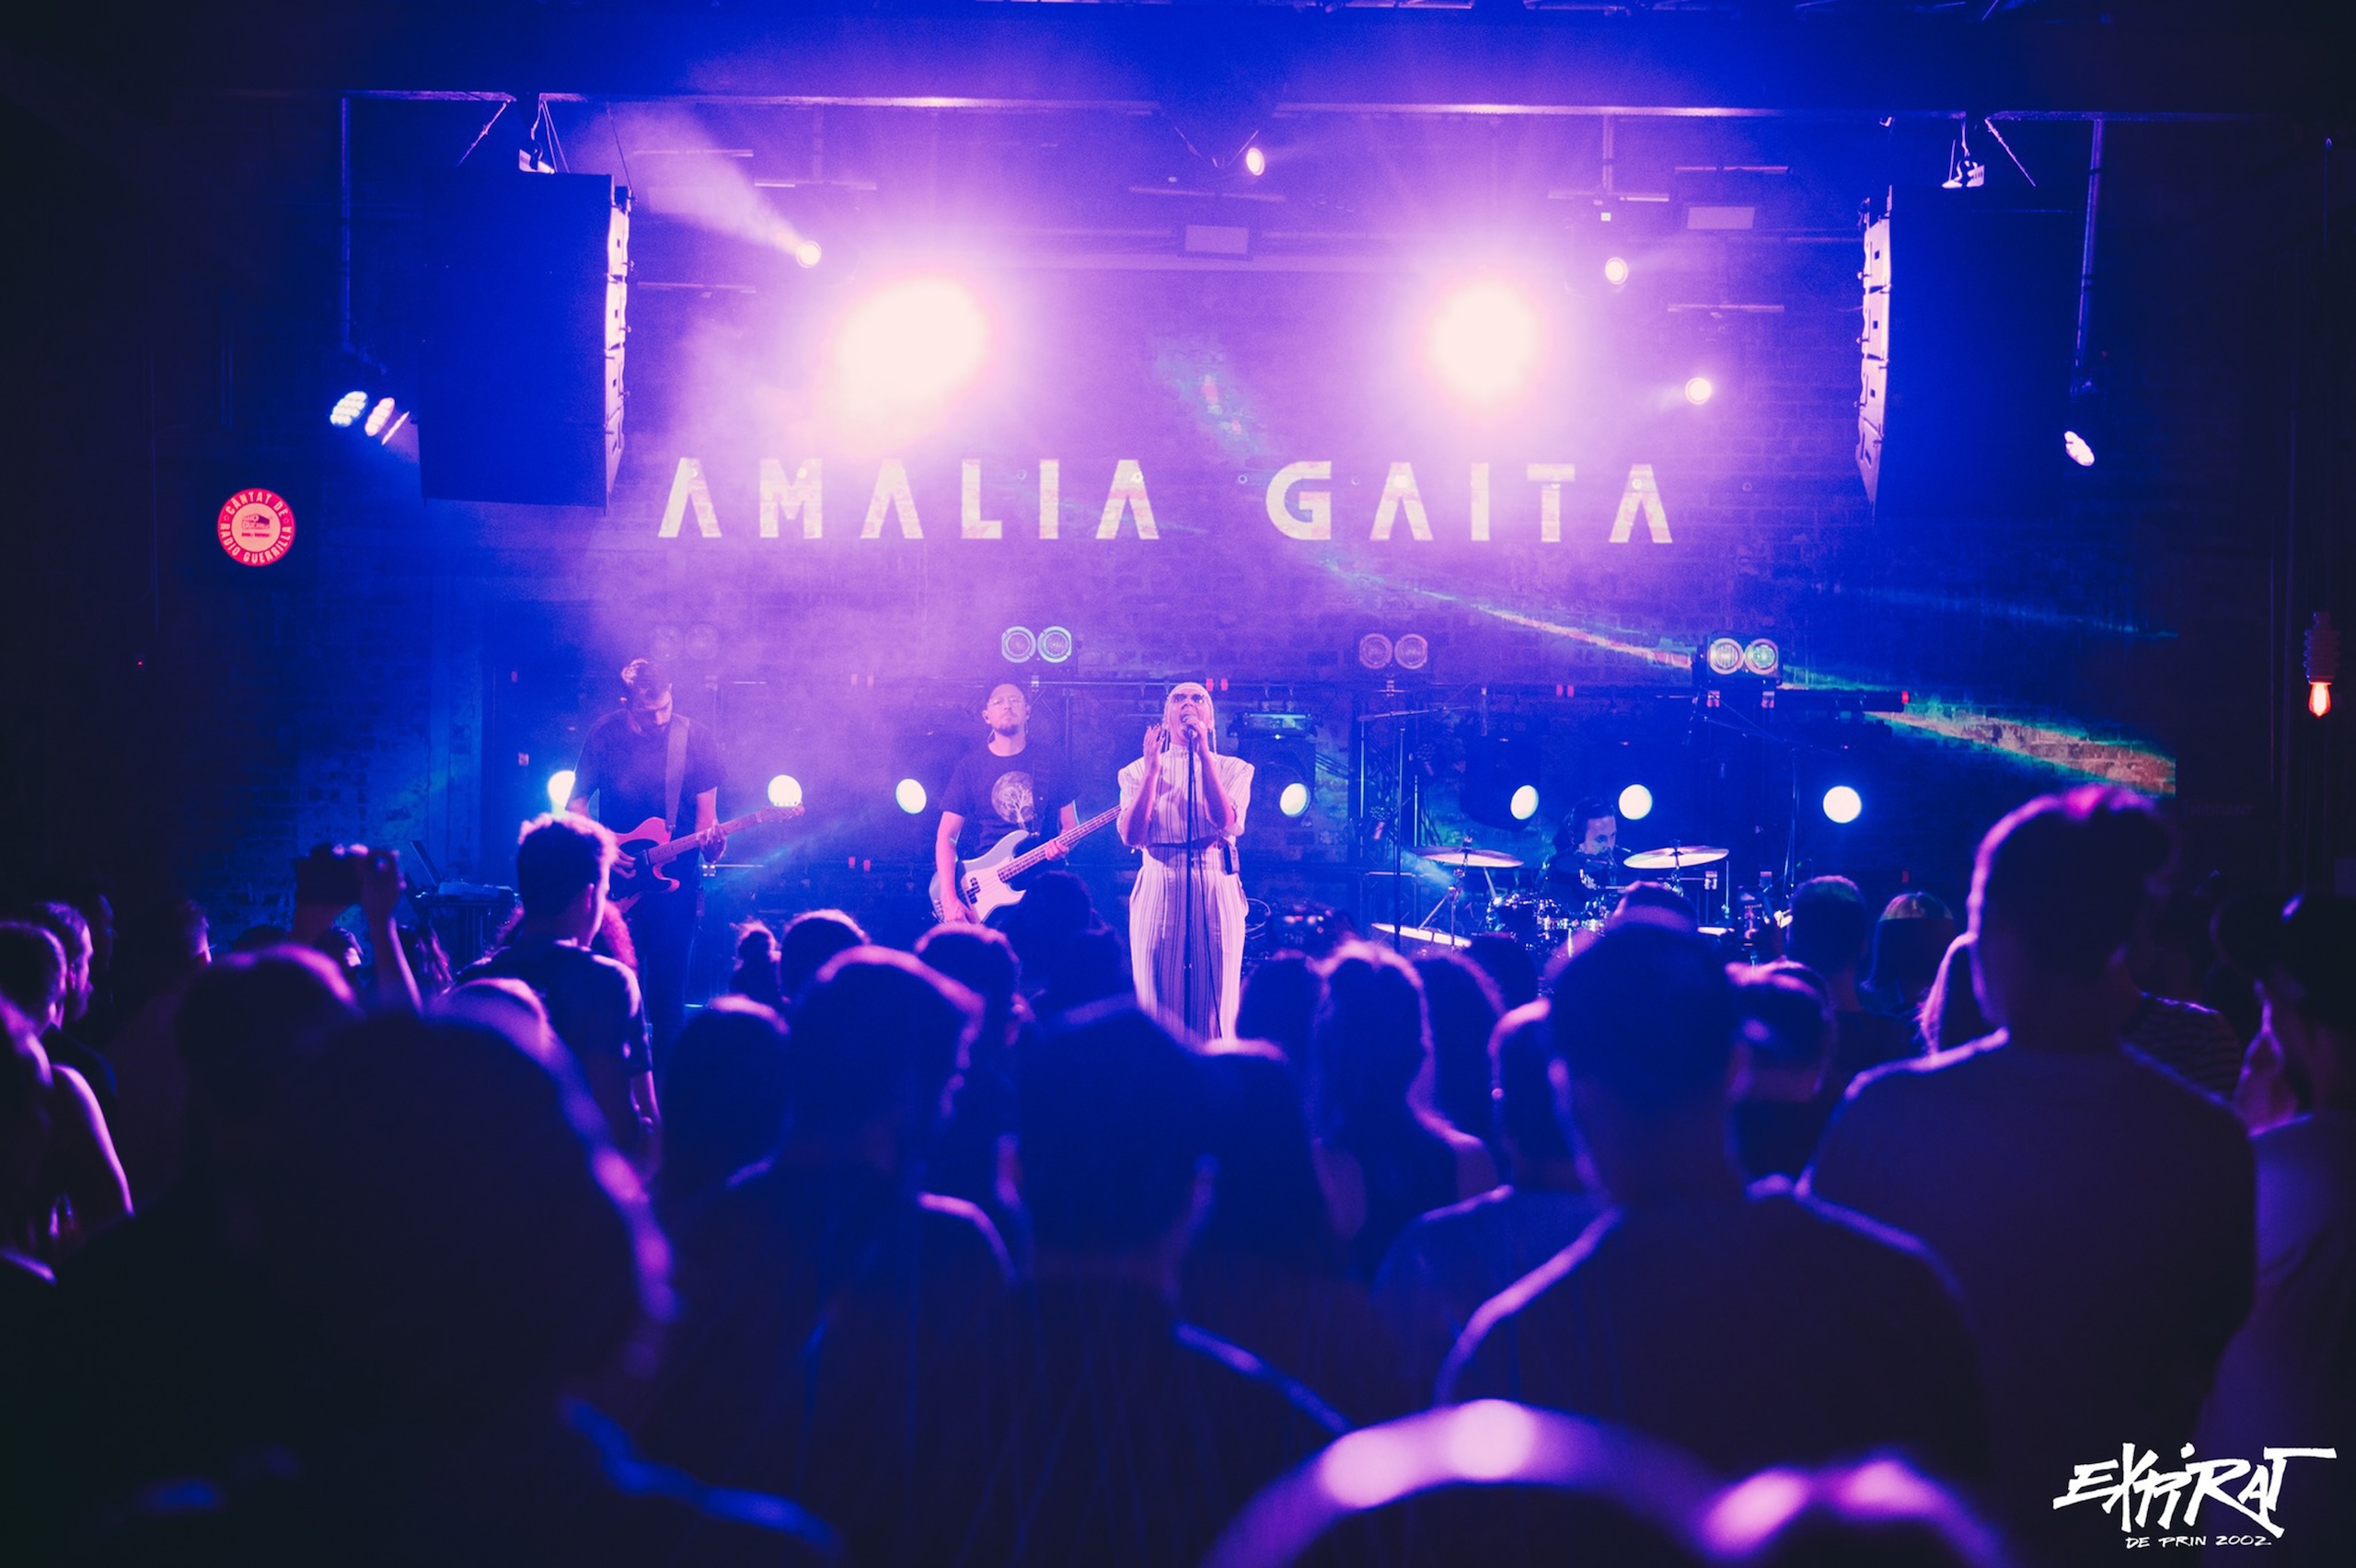 Amalia Gaiță lansează noul album “Mimosa” în concert la Expirat în 24 aprilie